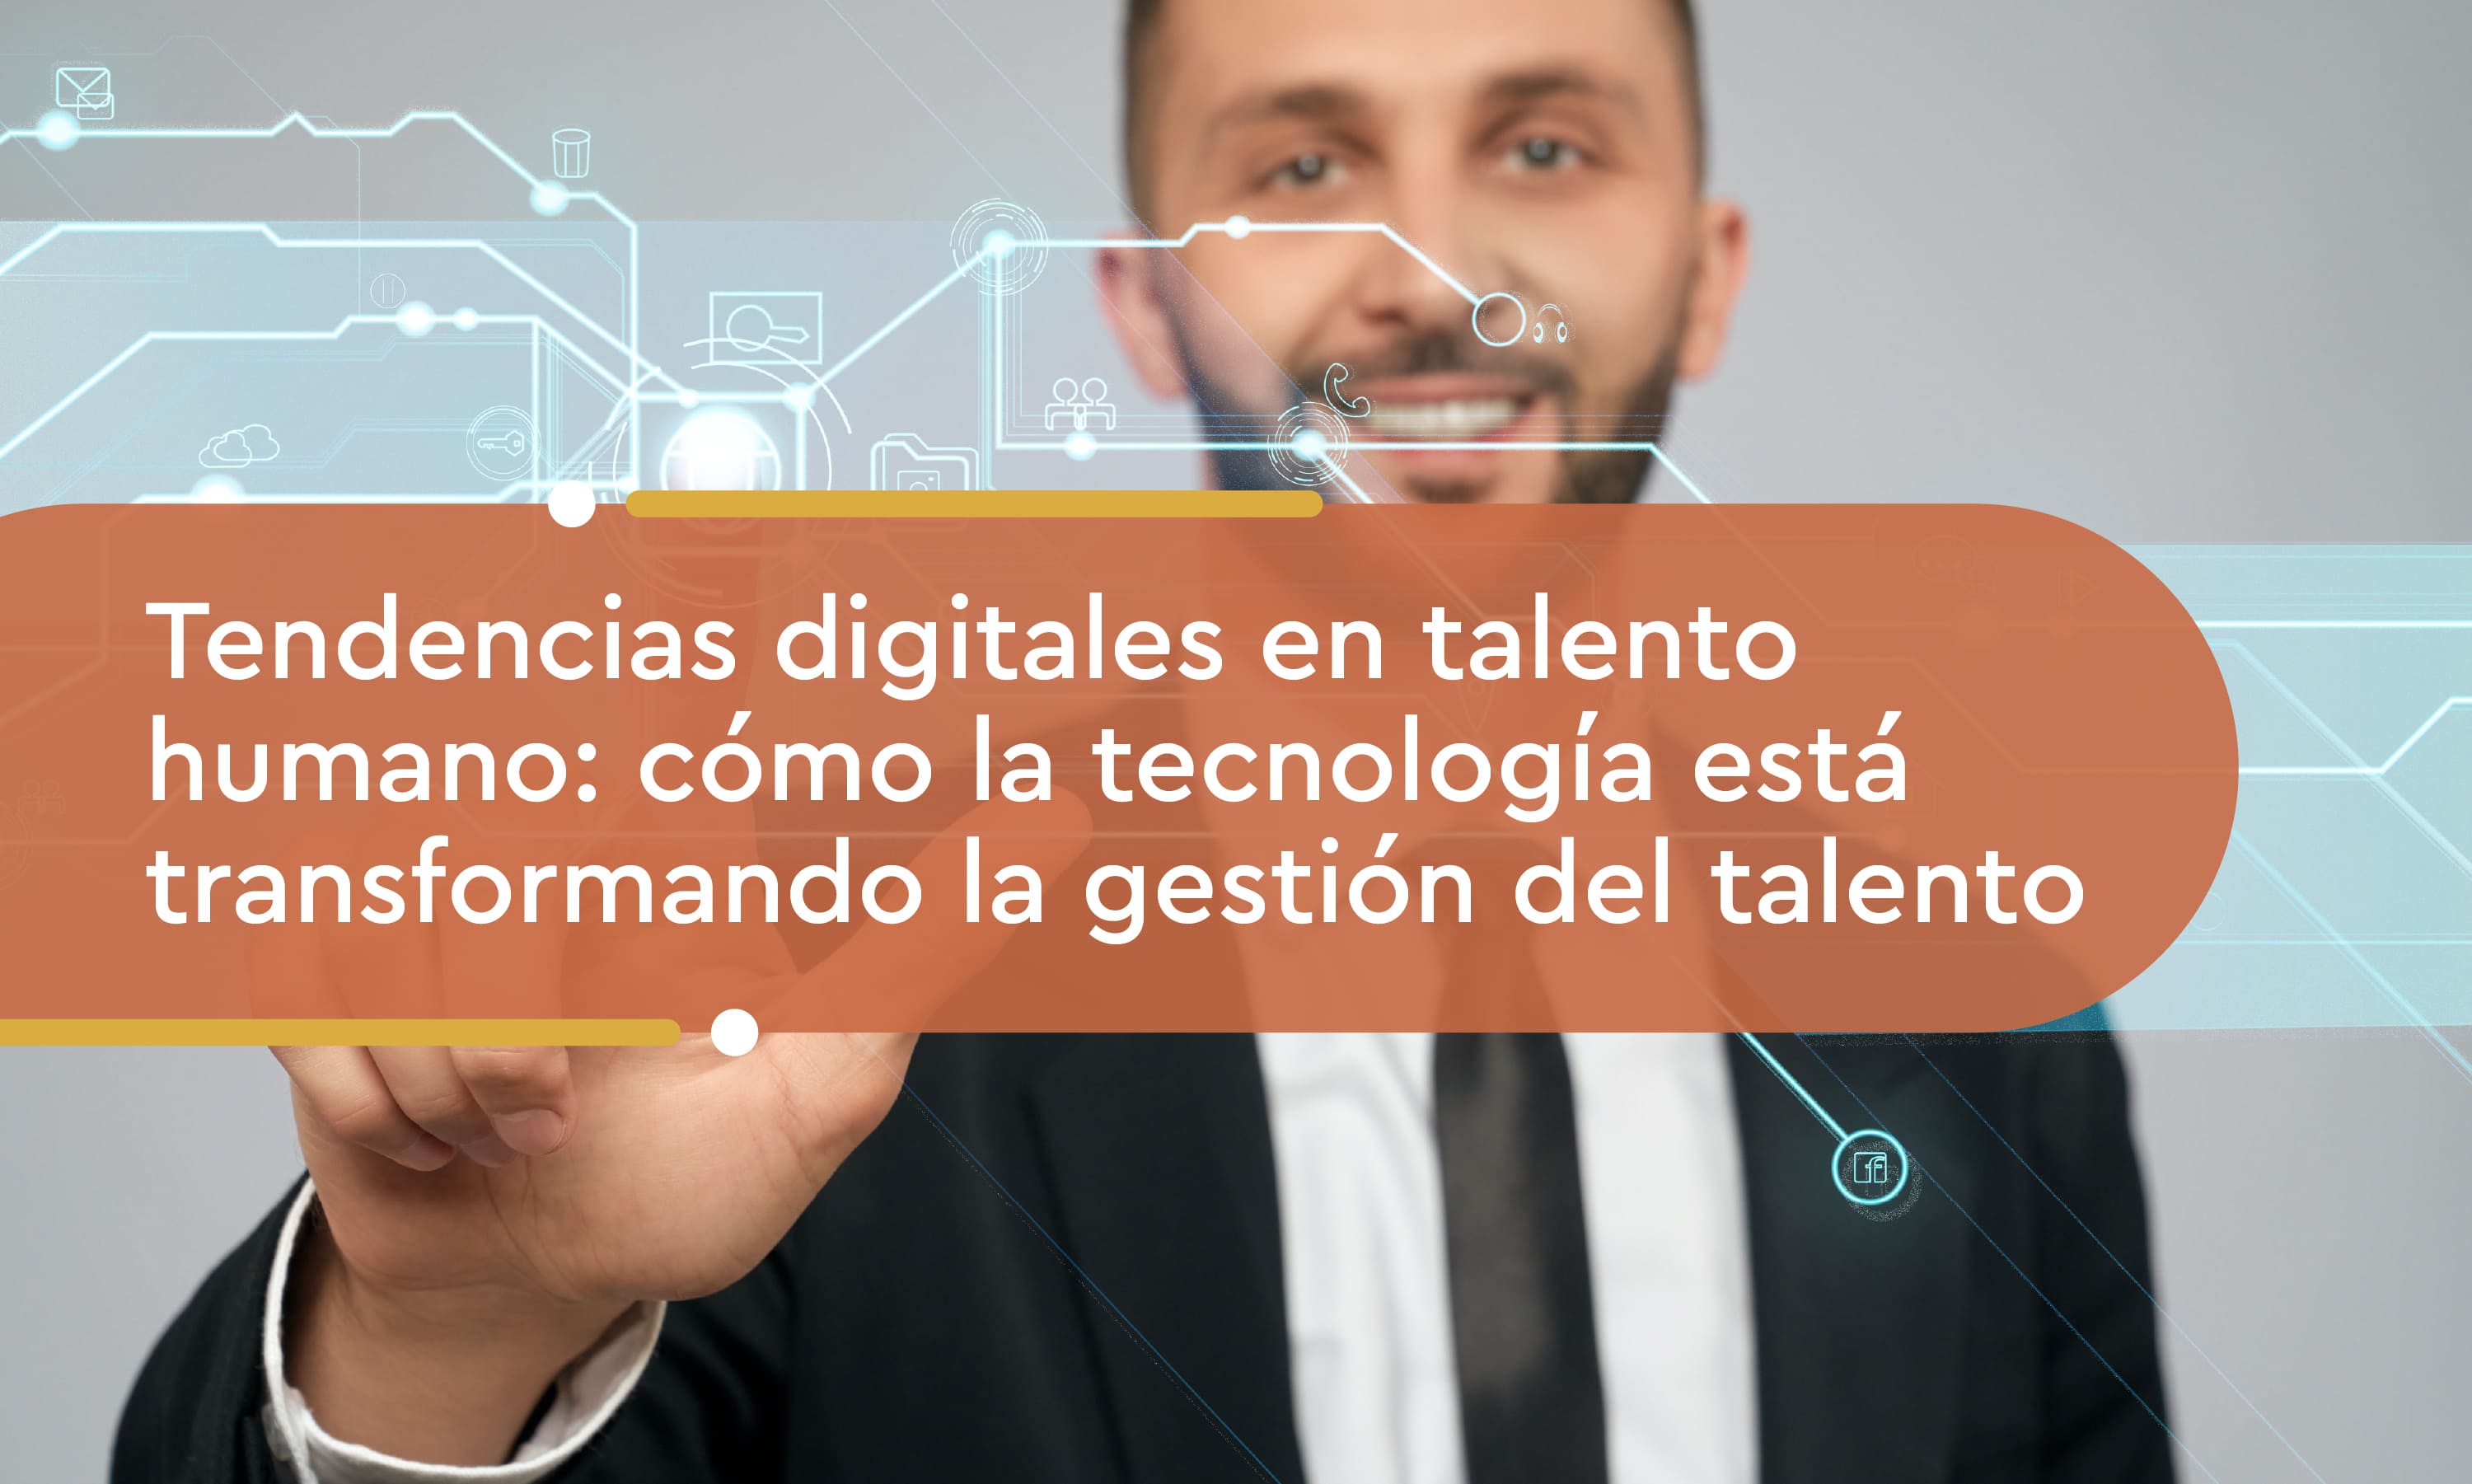 Tendencias digitales en talento humano: cómo la tecnología está transformando la gestión del talento